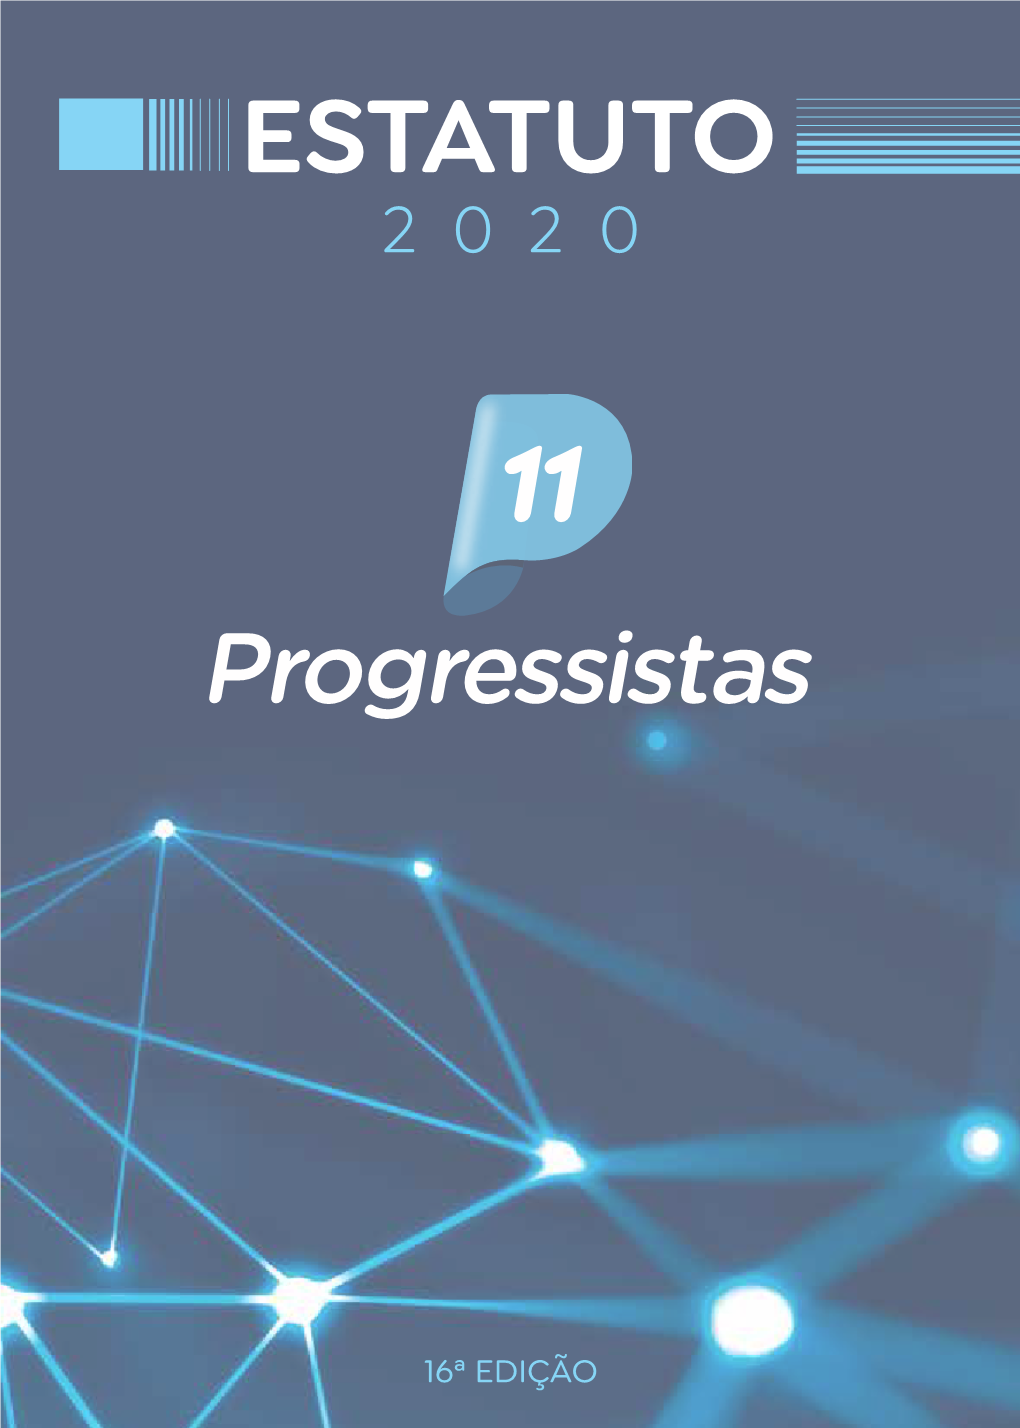 Estatuto 2020 Progressistas